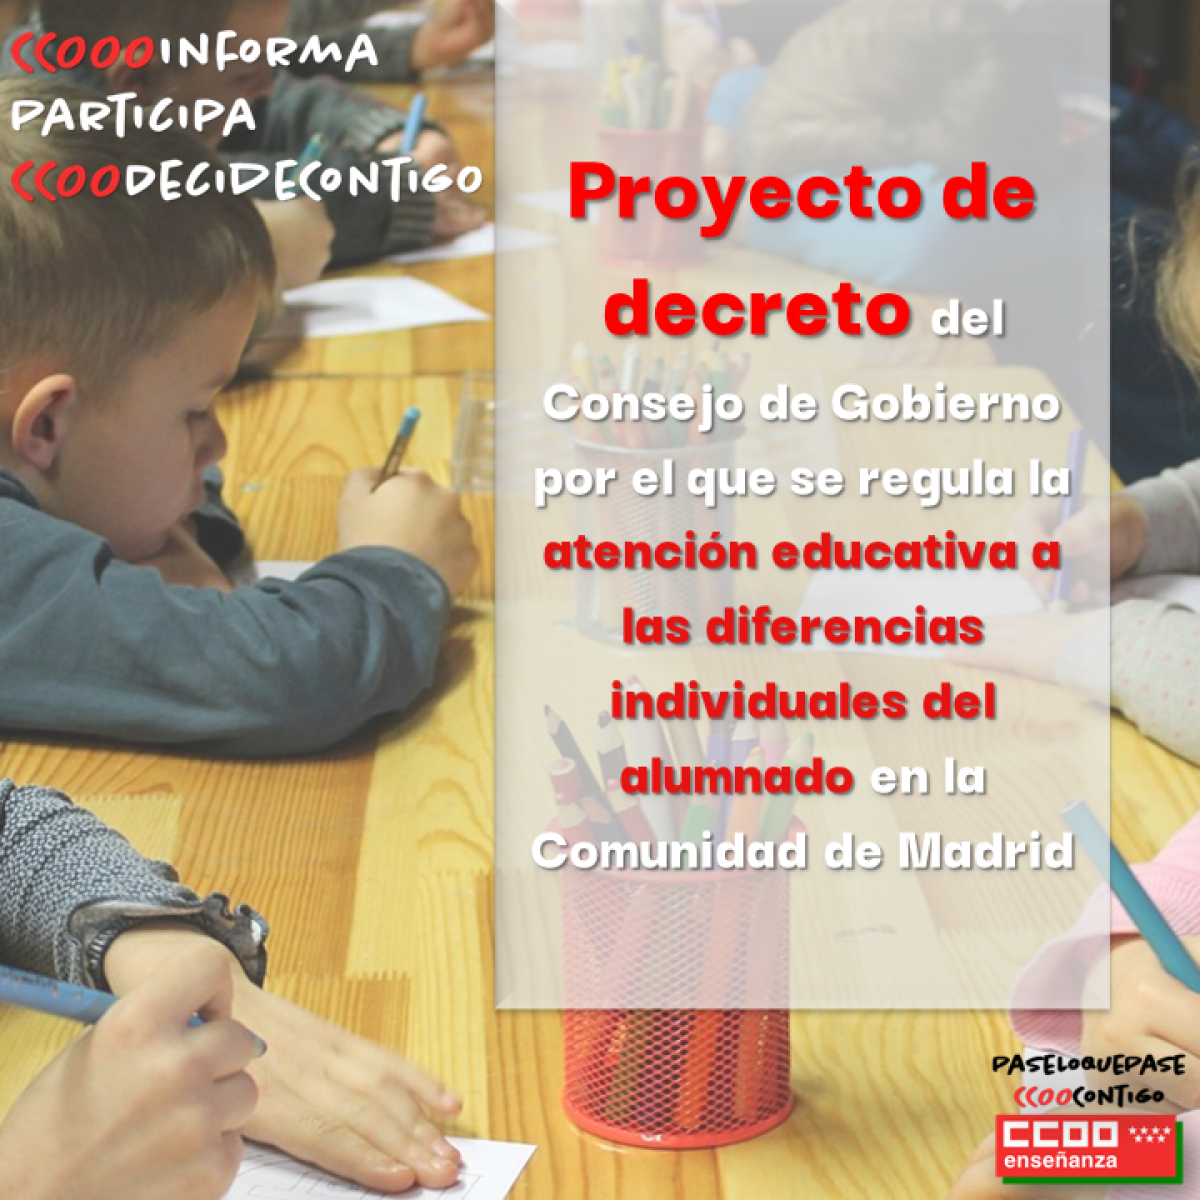 Proyecto de decreto del Consejo de Gobierno por el que se regula la atención educativa a las diferencias individuales del alumnado en la Comunidad de Madrid